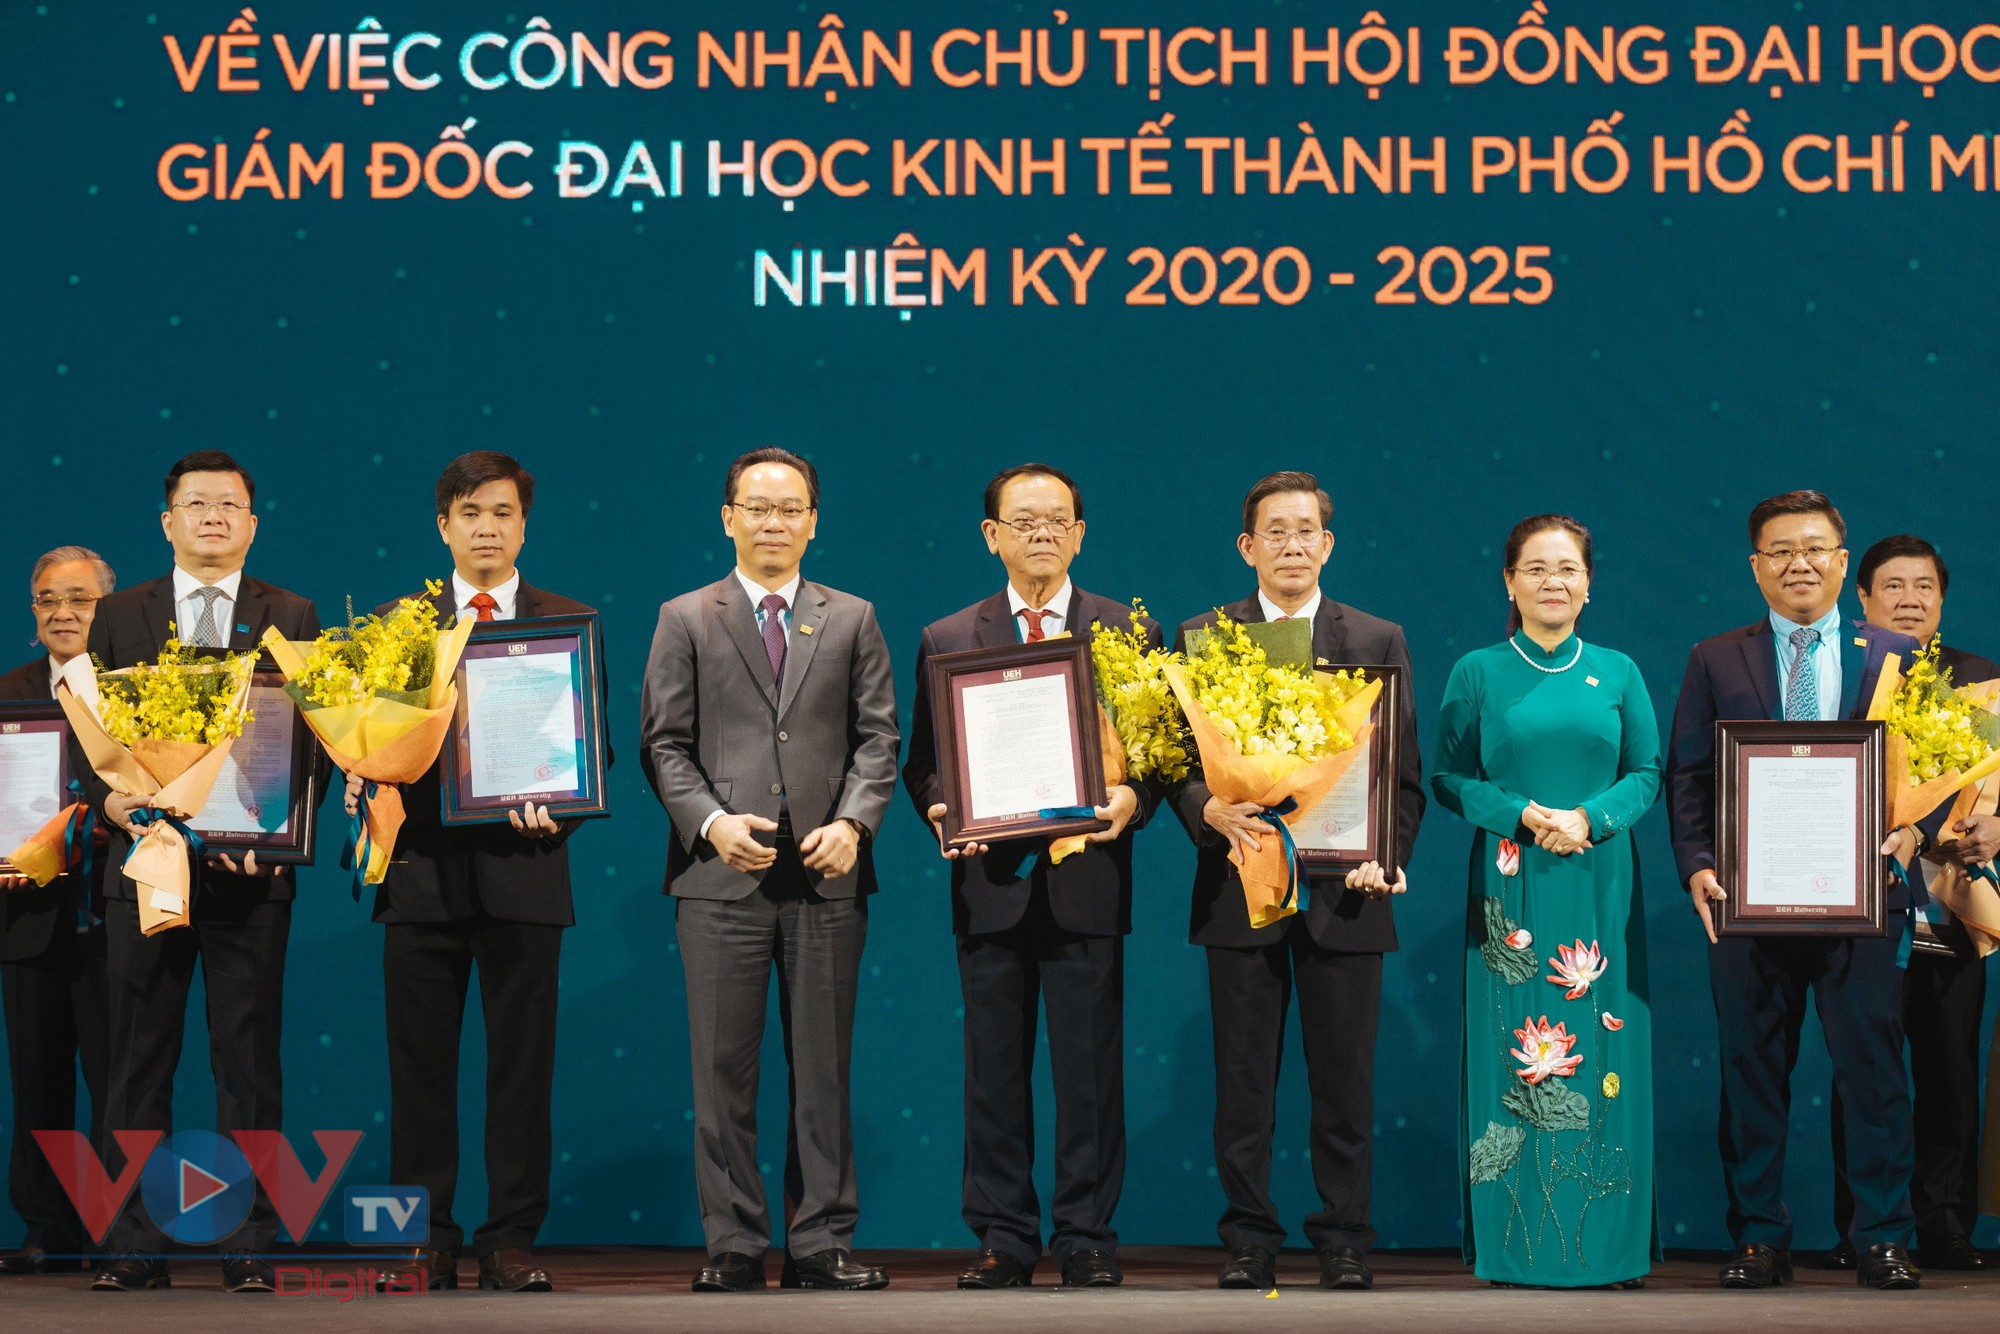 Đại học Kinh tế TP.HCM chính thức trở thành 1 trong 7 “Đại học đa ngành, đa lĩnh vực” ở Việt Nam- Ảnh 2.